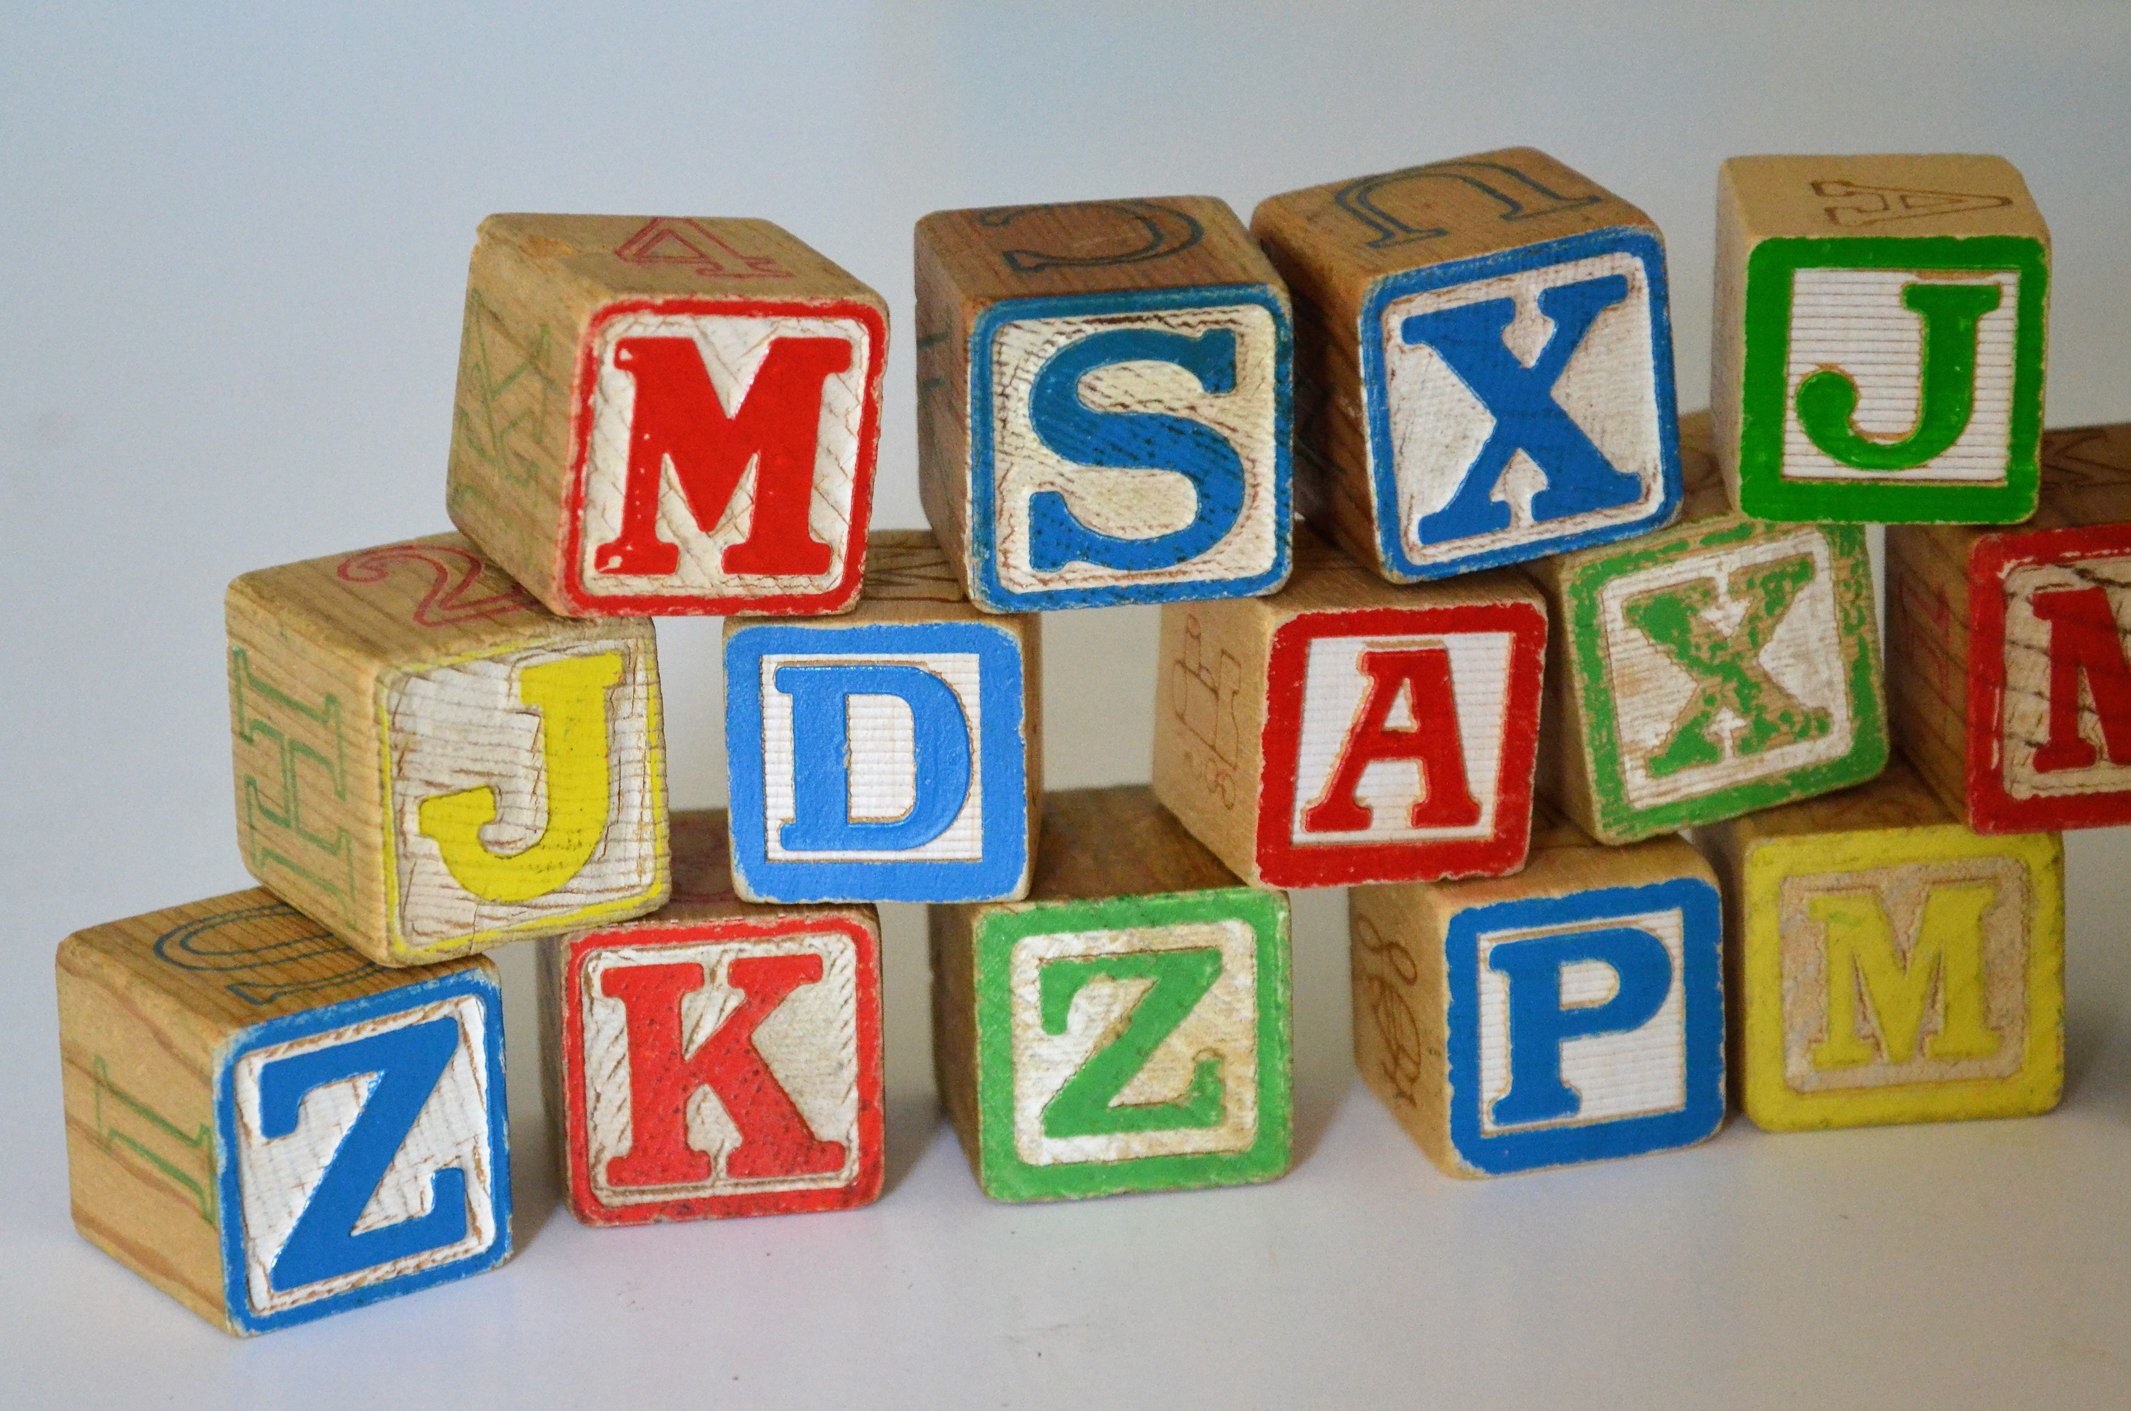 Blocos de madeira coloridos empilhados, cada um com uma letra diferente do alfabeto.